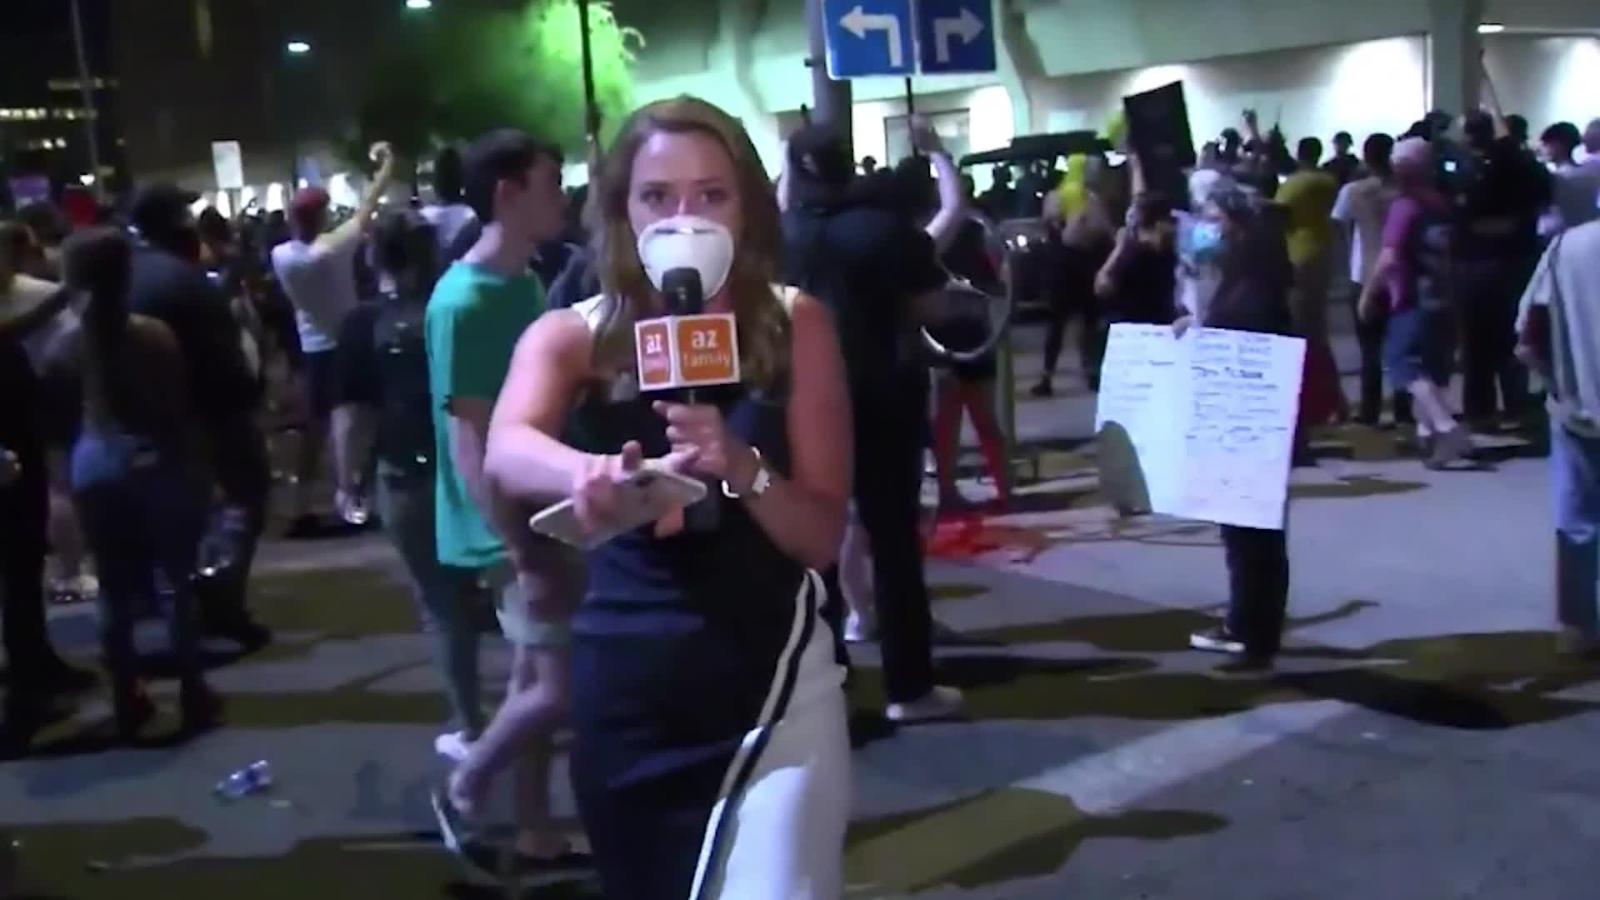 Periodistas reciben ataques de la Policía y manifestantes durante protestas  en EE.UU. | Video | CNN